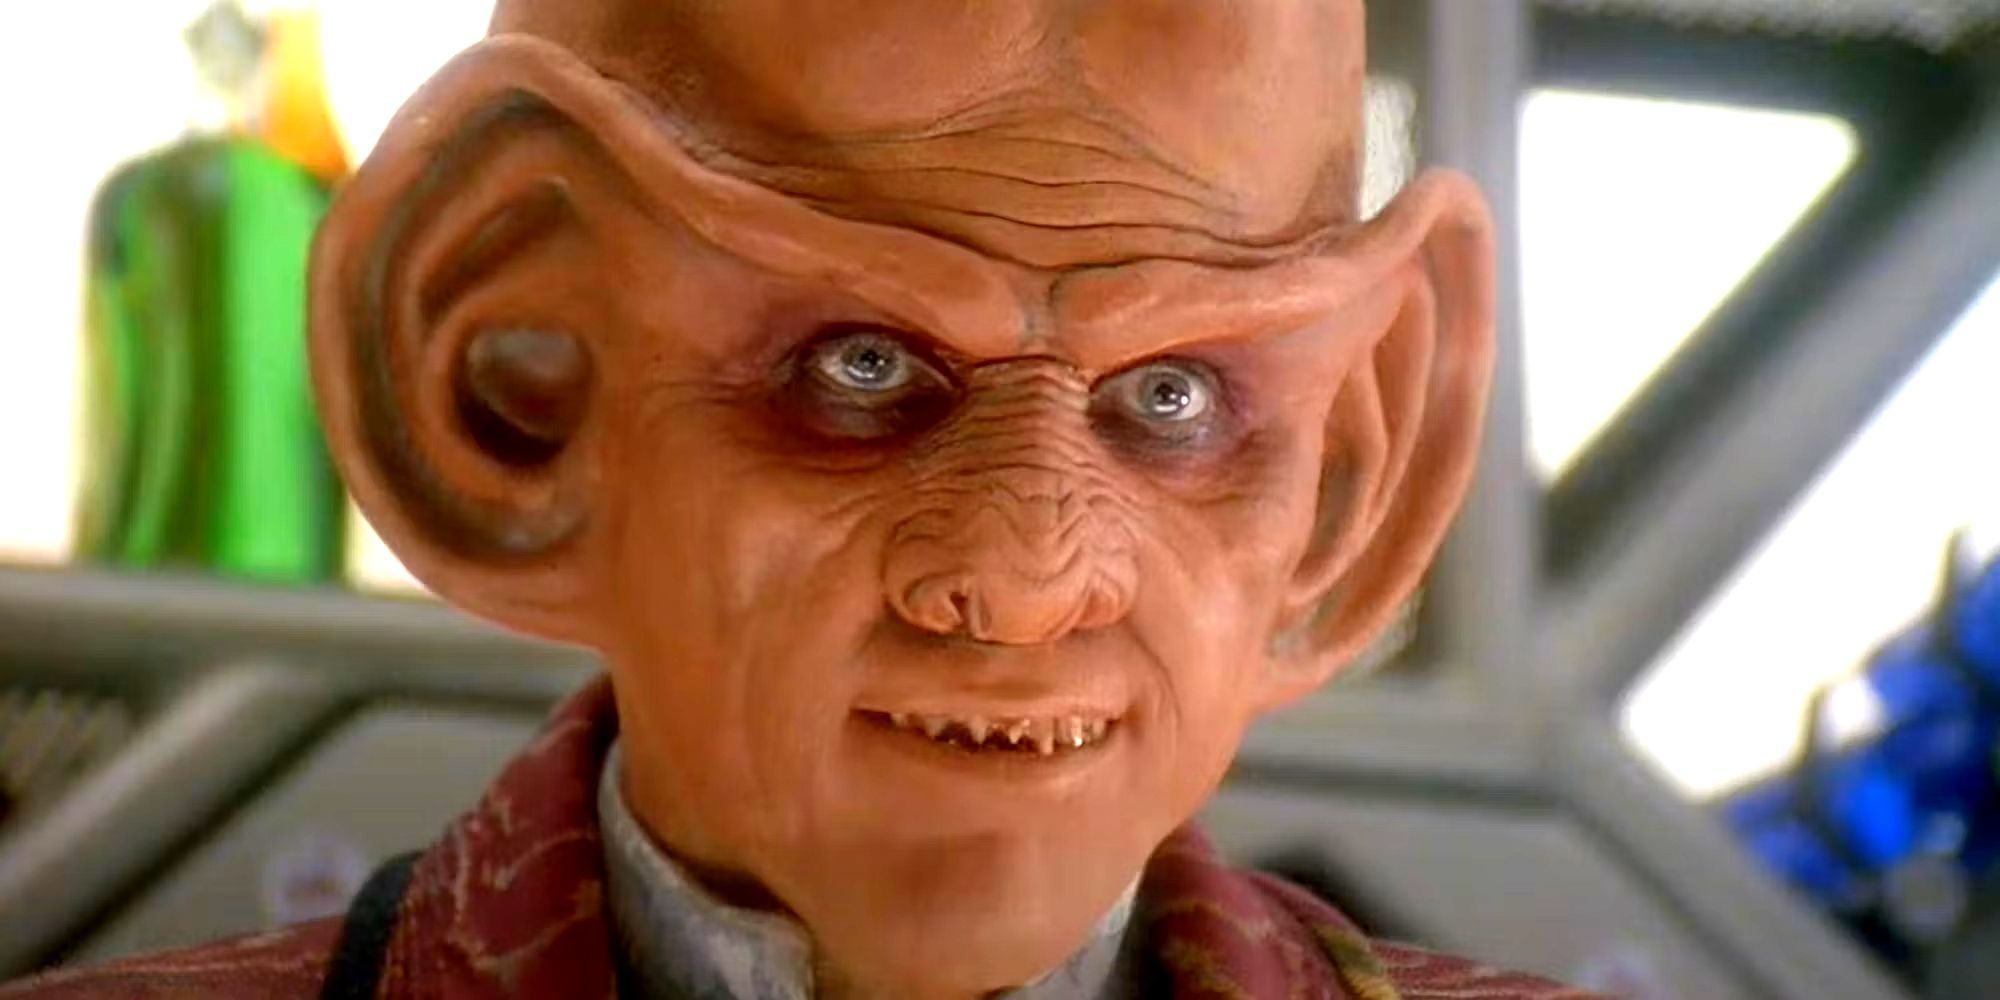 “Yo diría que sí”: Armin Shimerman de DS9 regresaría a Star Trek como Quark